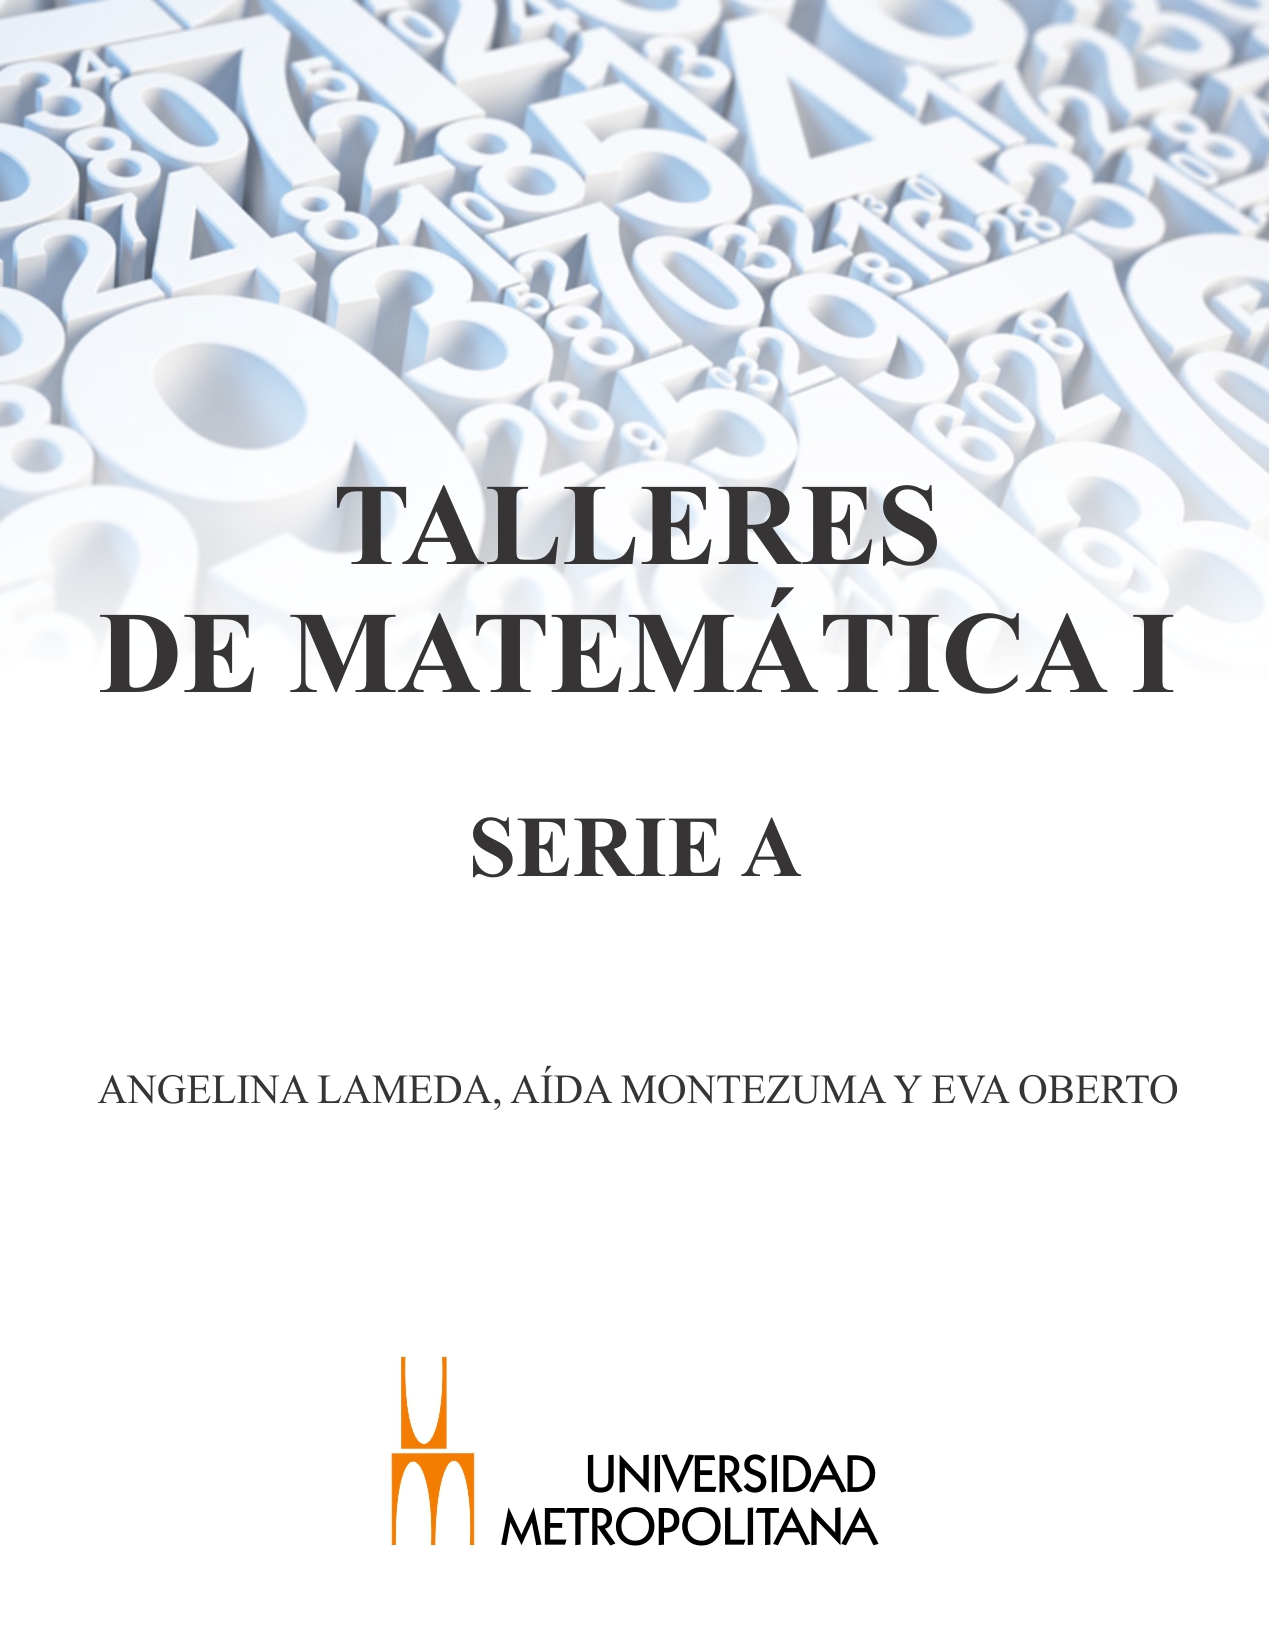 Talleres de Matemáticas Series A, B y C - Unimet